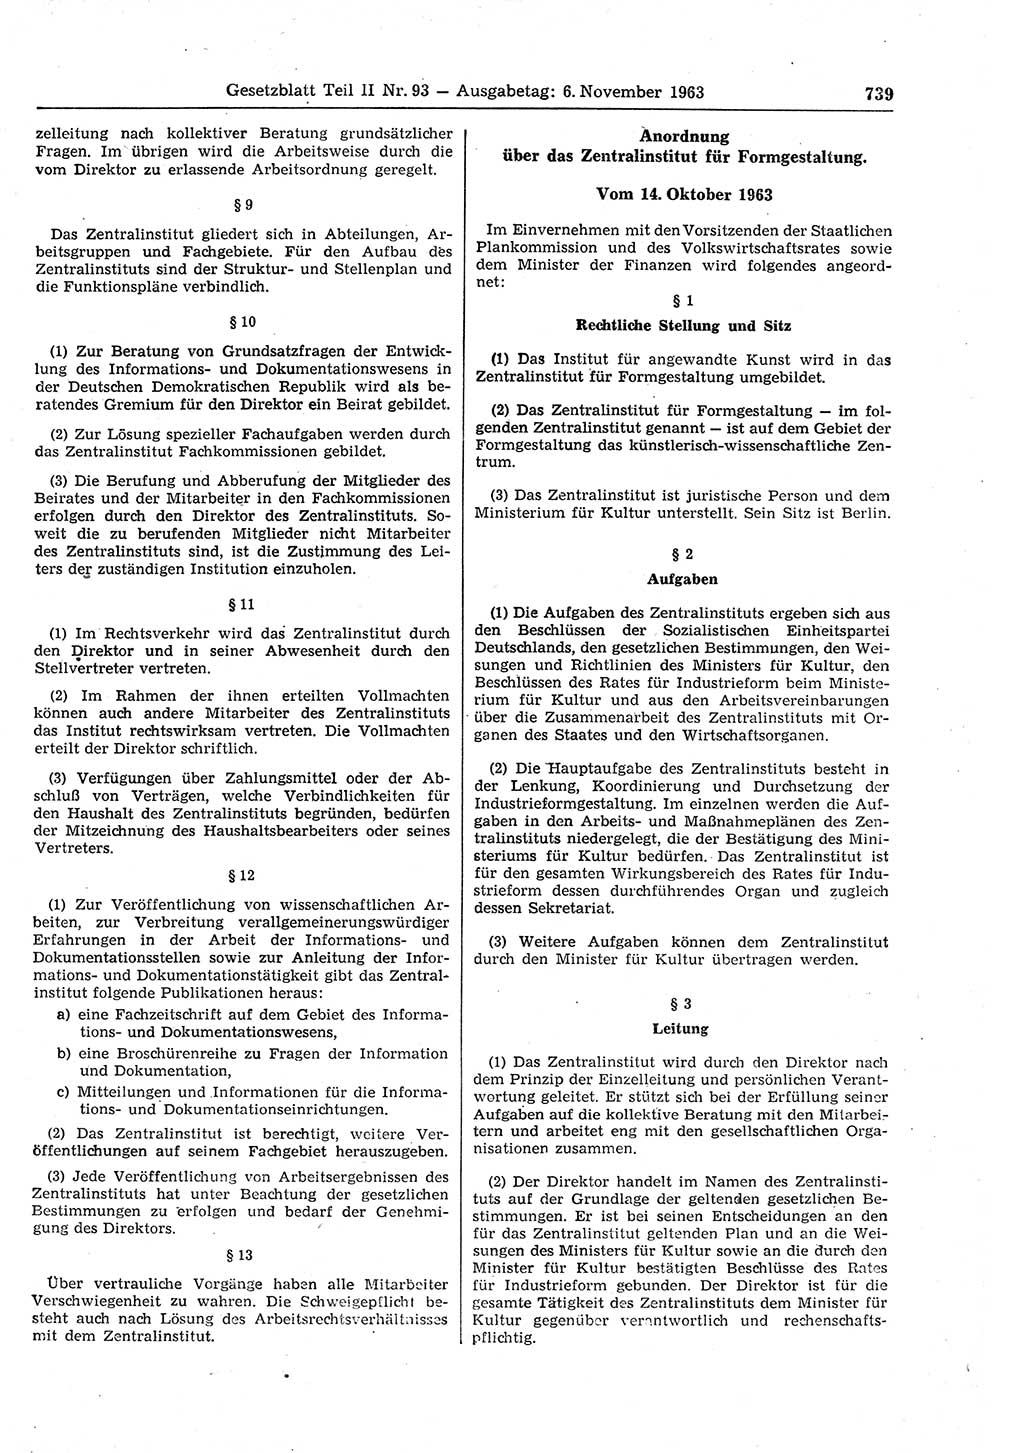 Gesetzblatt (GBl.) der Deutschen Demokratischen Republik (DDR) Teil ⅠⅠ 1963, Seite 739 (GBl. DDR ⅠⅠ 1963, S. 739)